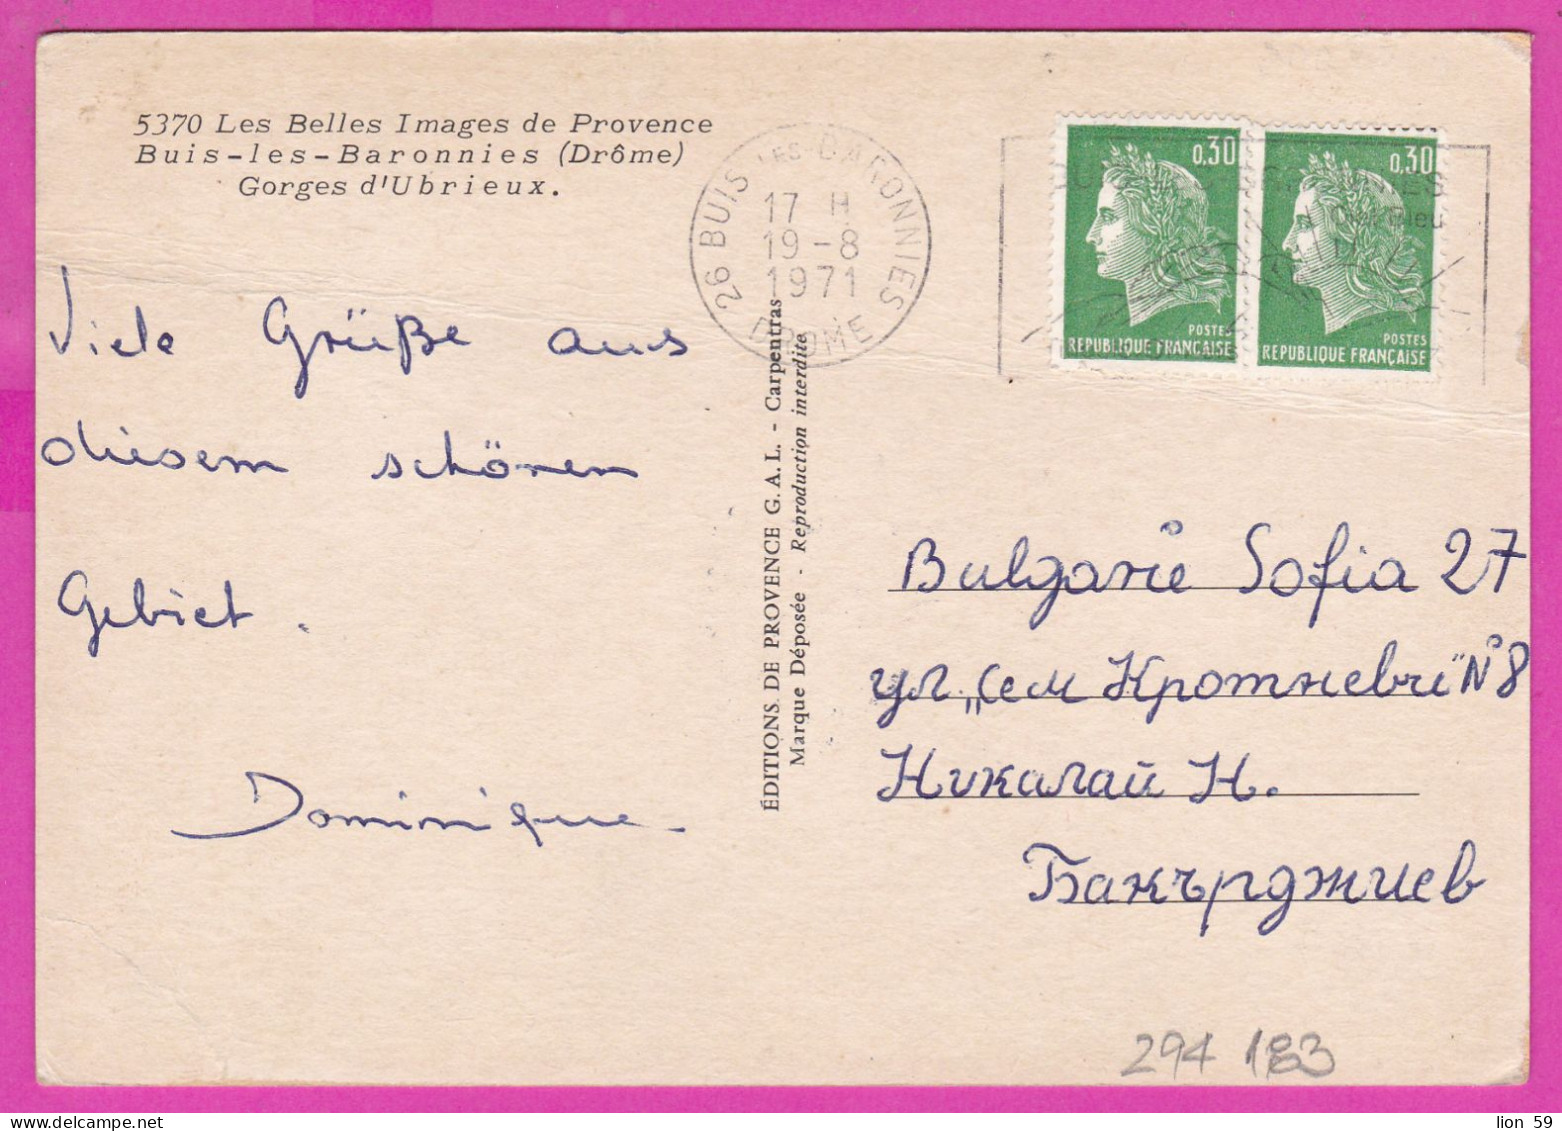 294183 / France - Buis-Les-Baronnies (Drome) Gorges D'Ubrieux PC 1971 USED 0.30+0.30 Fr. Marianne De Cheffer Flamme - 1967-1970 Marianne De Cheffer